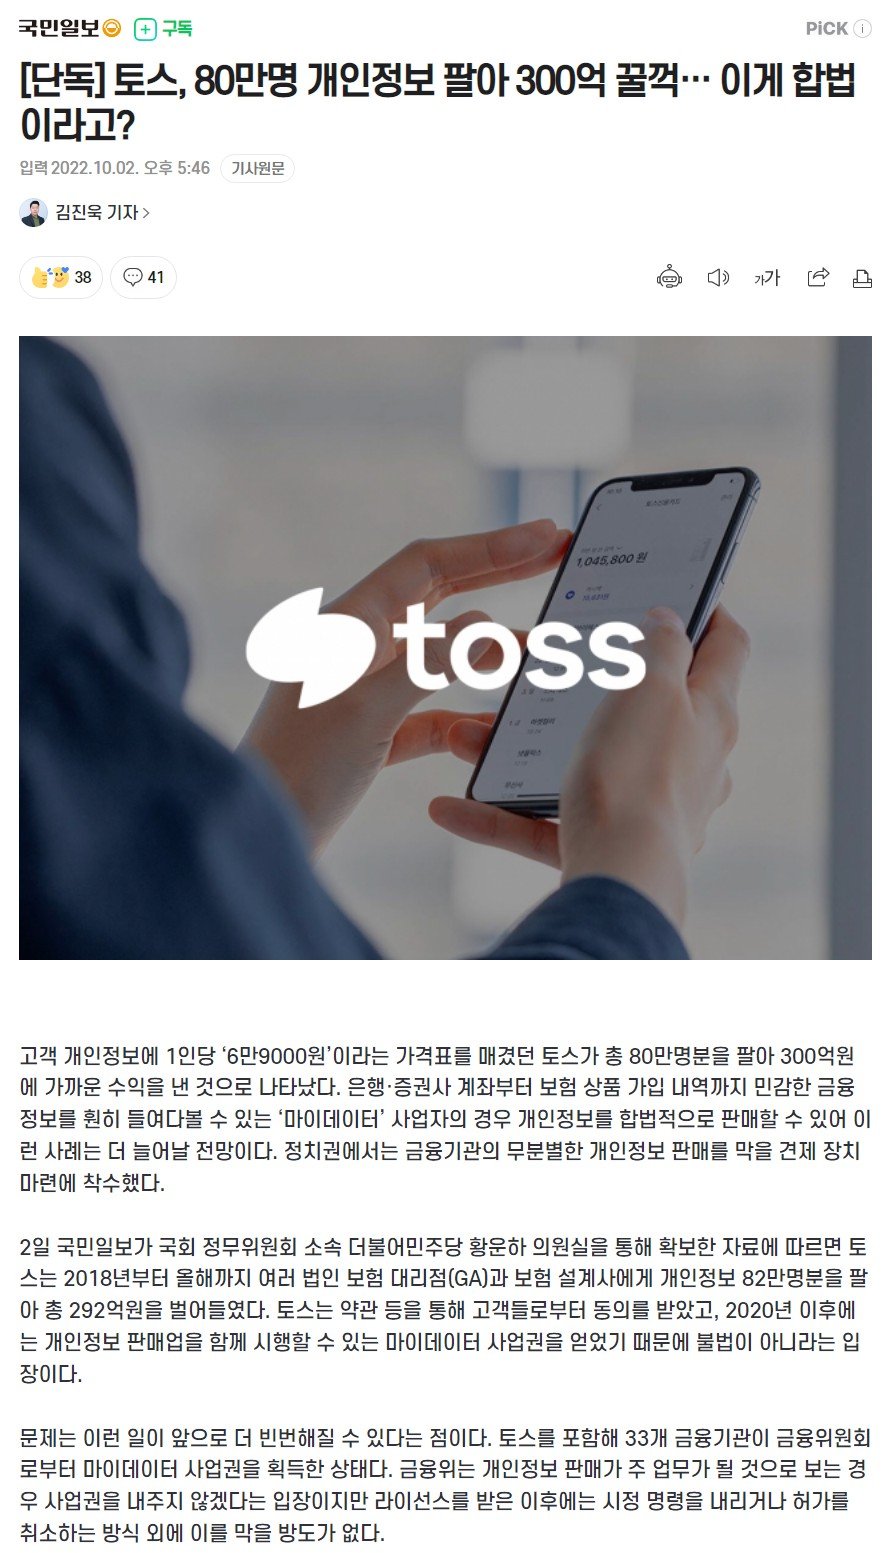 [단독] 토스, 80만명 개인정보 팔아 300억 꿀꺽